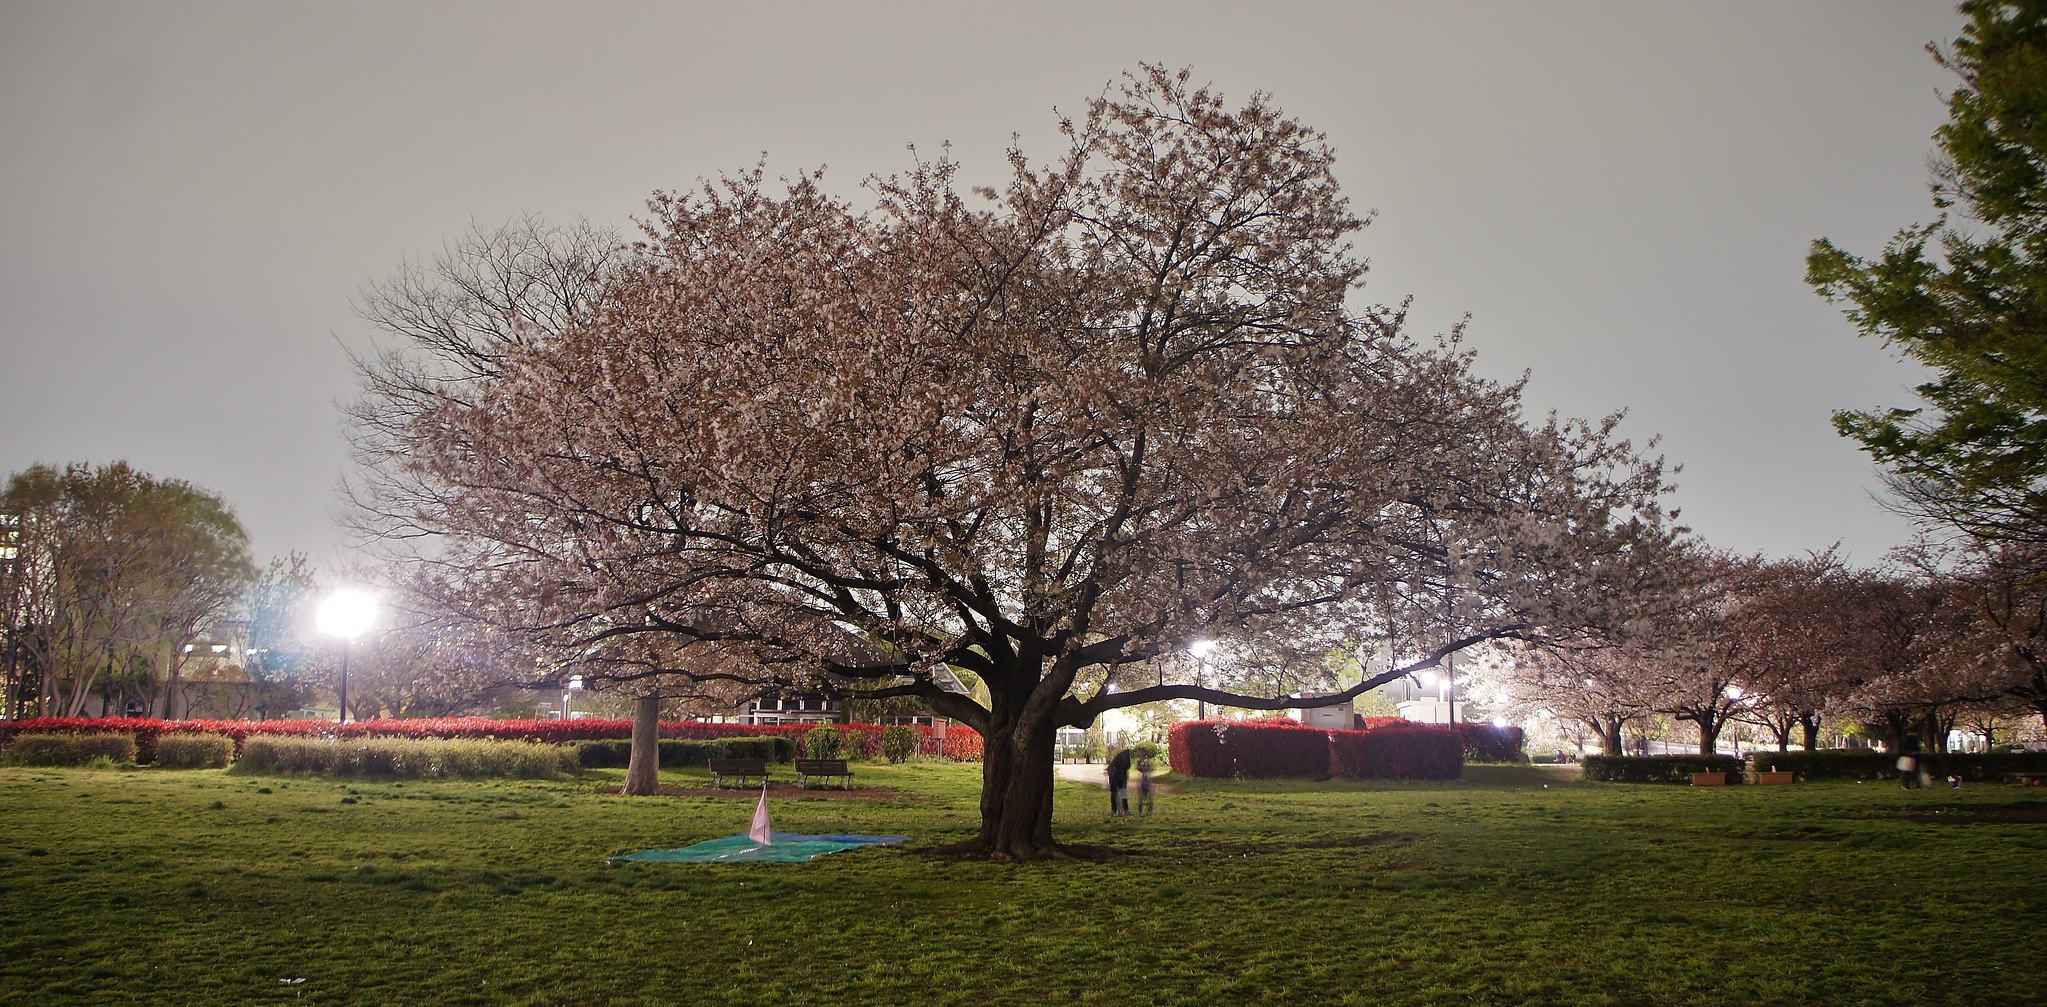 Kiba Park Cherry Blossom Illumination